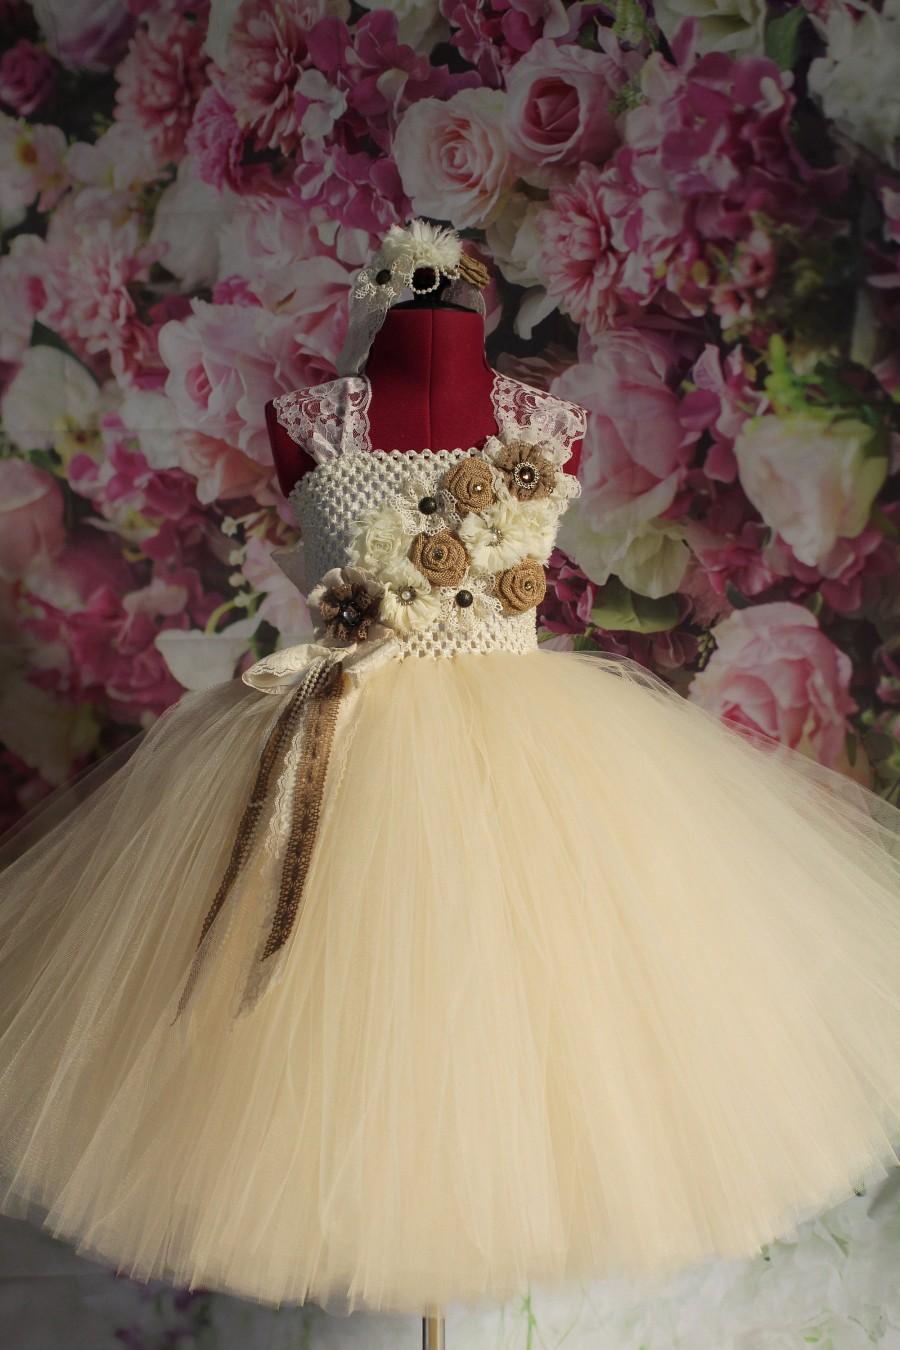 زفاف - Country Flower Girl Dress,Rustic Flower Girl Dress,Vintage Inspired Girls Dress, Infant Lace Tulle Dress, Toddler Ivory Lace Dress